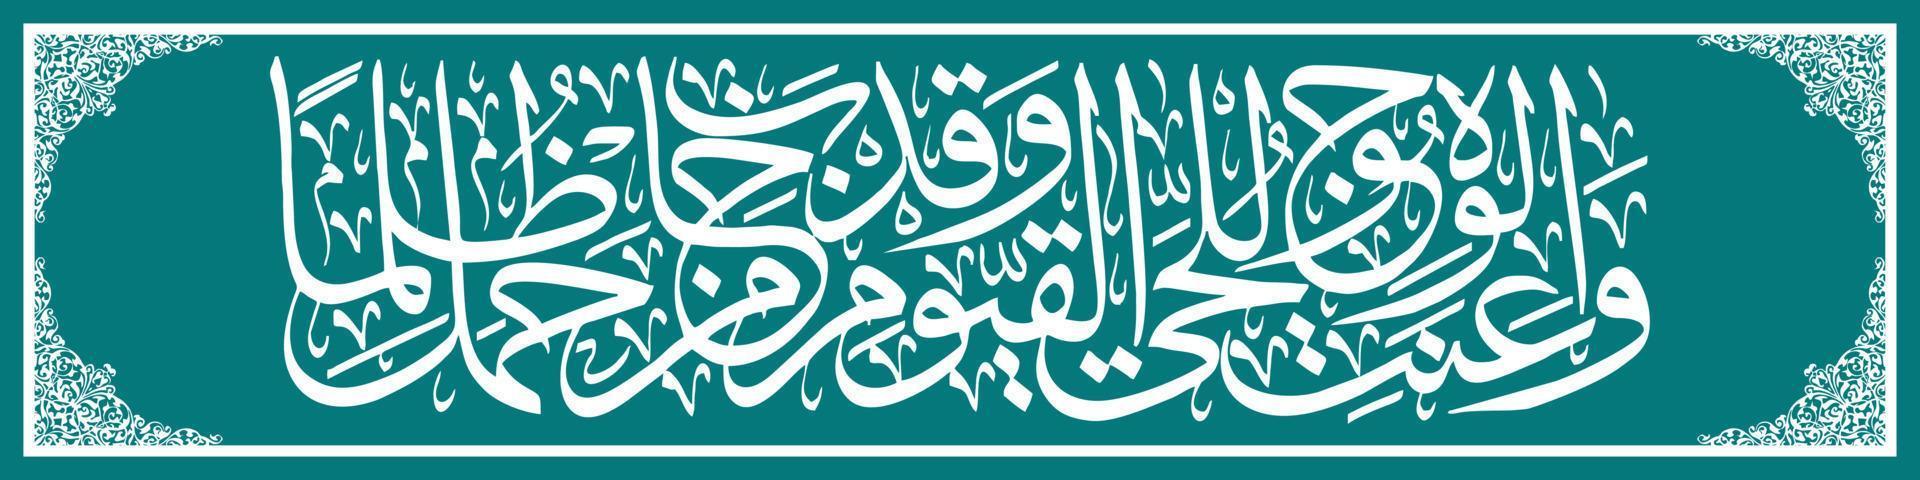 calligraphie arabe al quran surah taha verset 111, traduction et tous les visages sont inclinés devant le dieu vivant et seul. c'est une perte pour ceux qui commettent des injustices vecteur